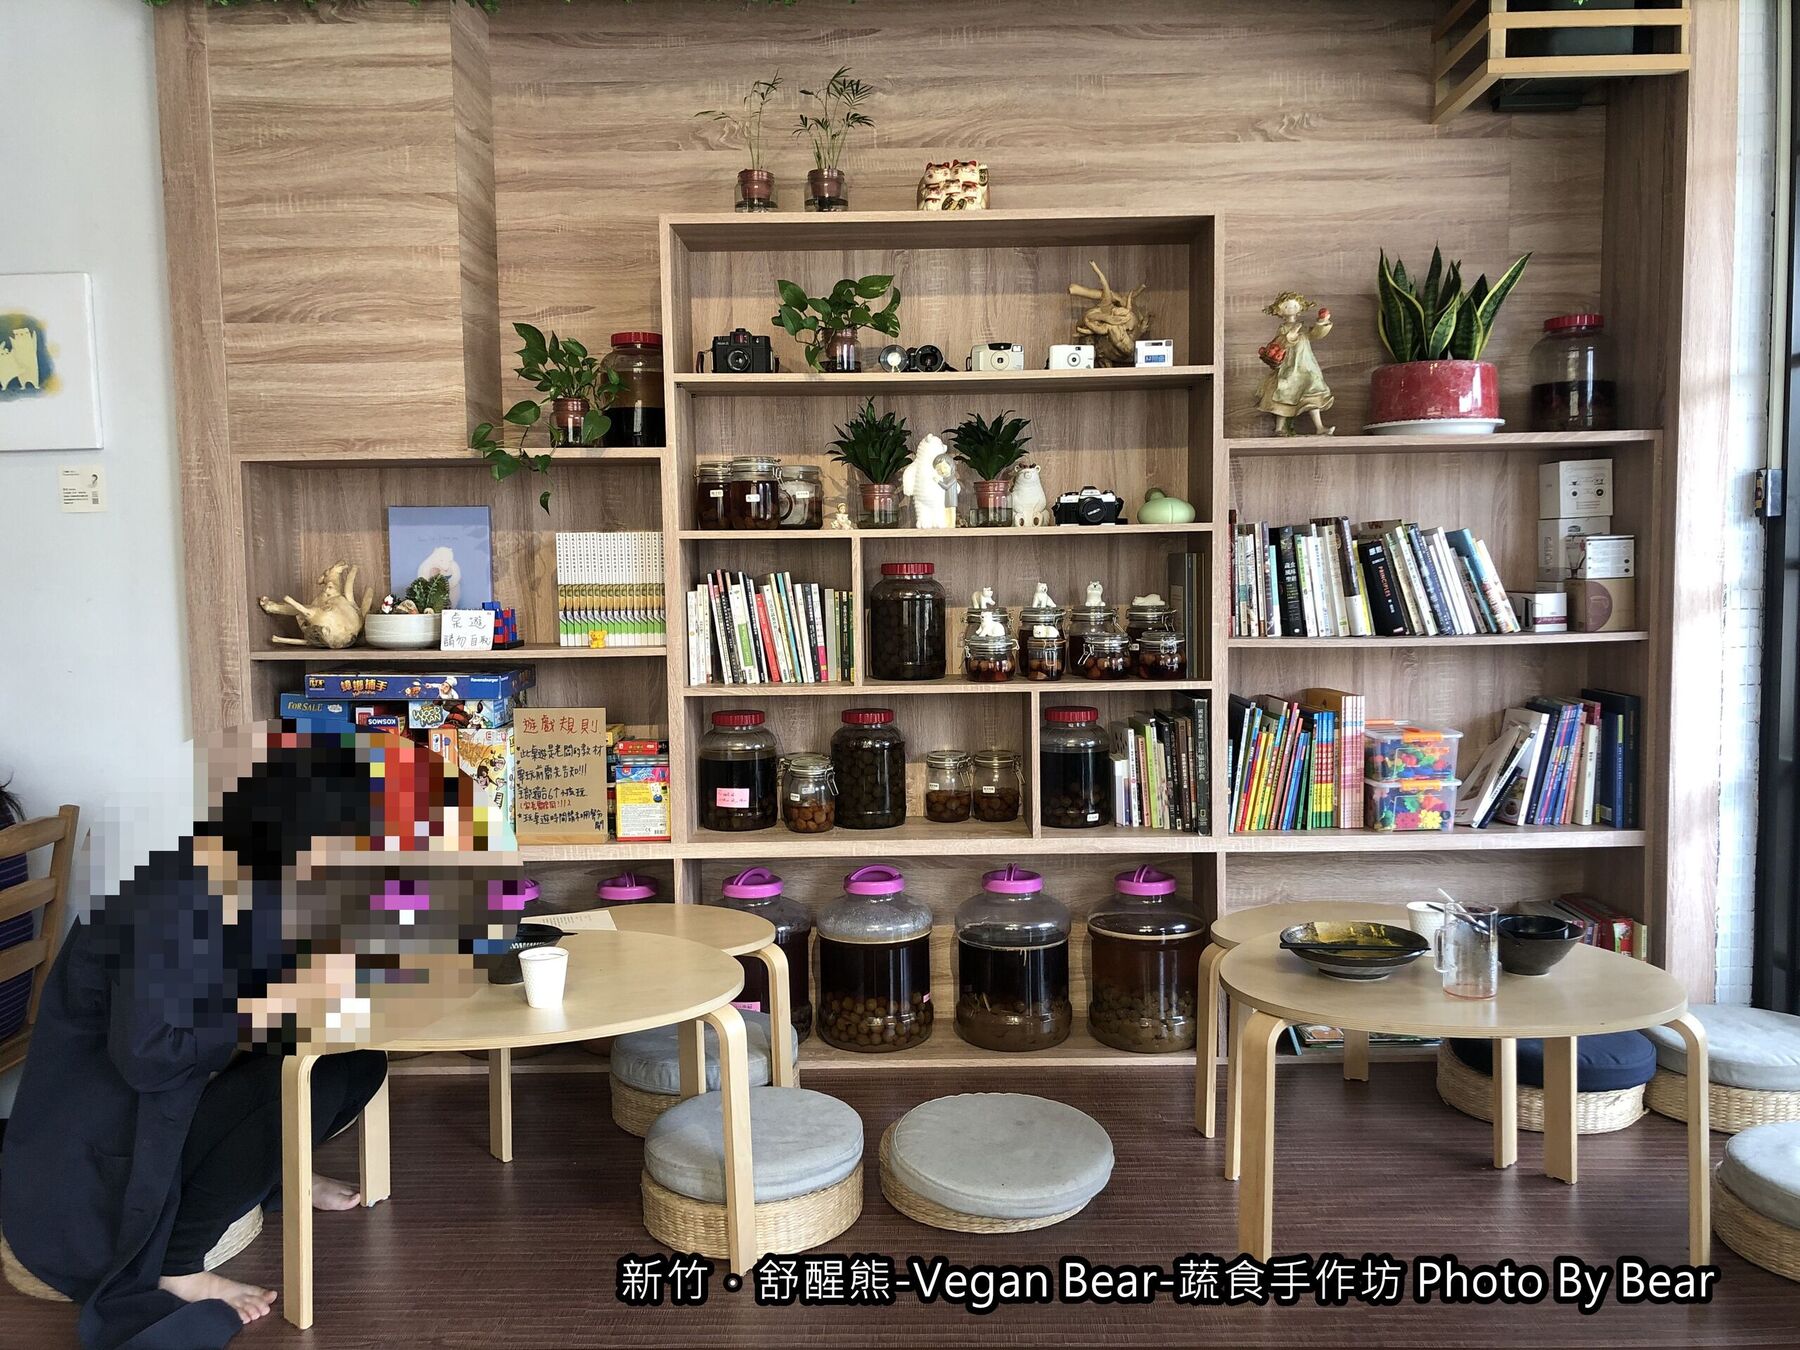 【新竹】「舒醒熊 -Vegan Bear- 蔬食手作坊（創意蔬食/臭豆腐炒飯/純素甜點/無國界料理/免費桌遊/防疫外帶特餐）」